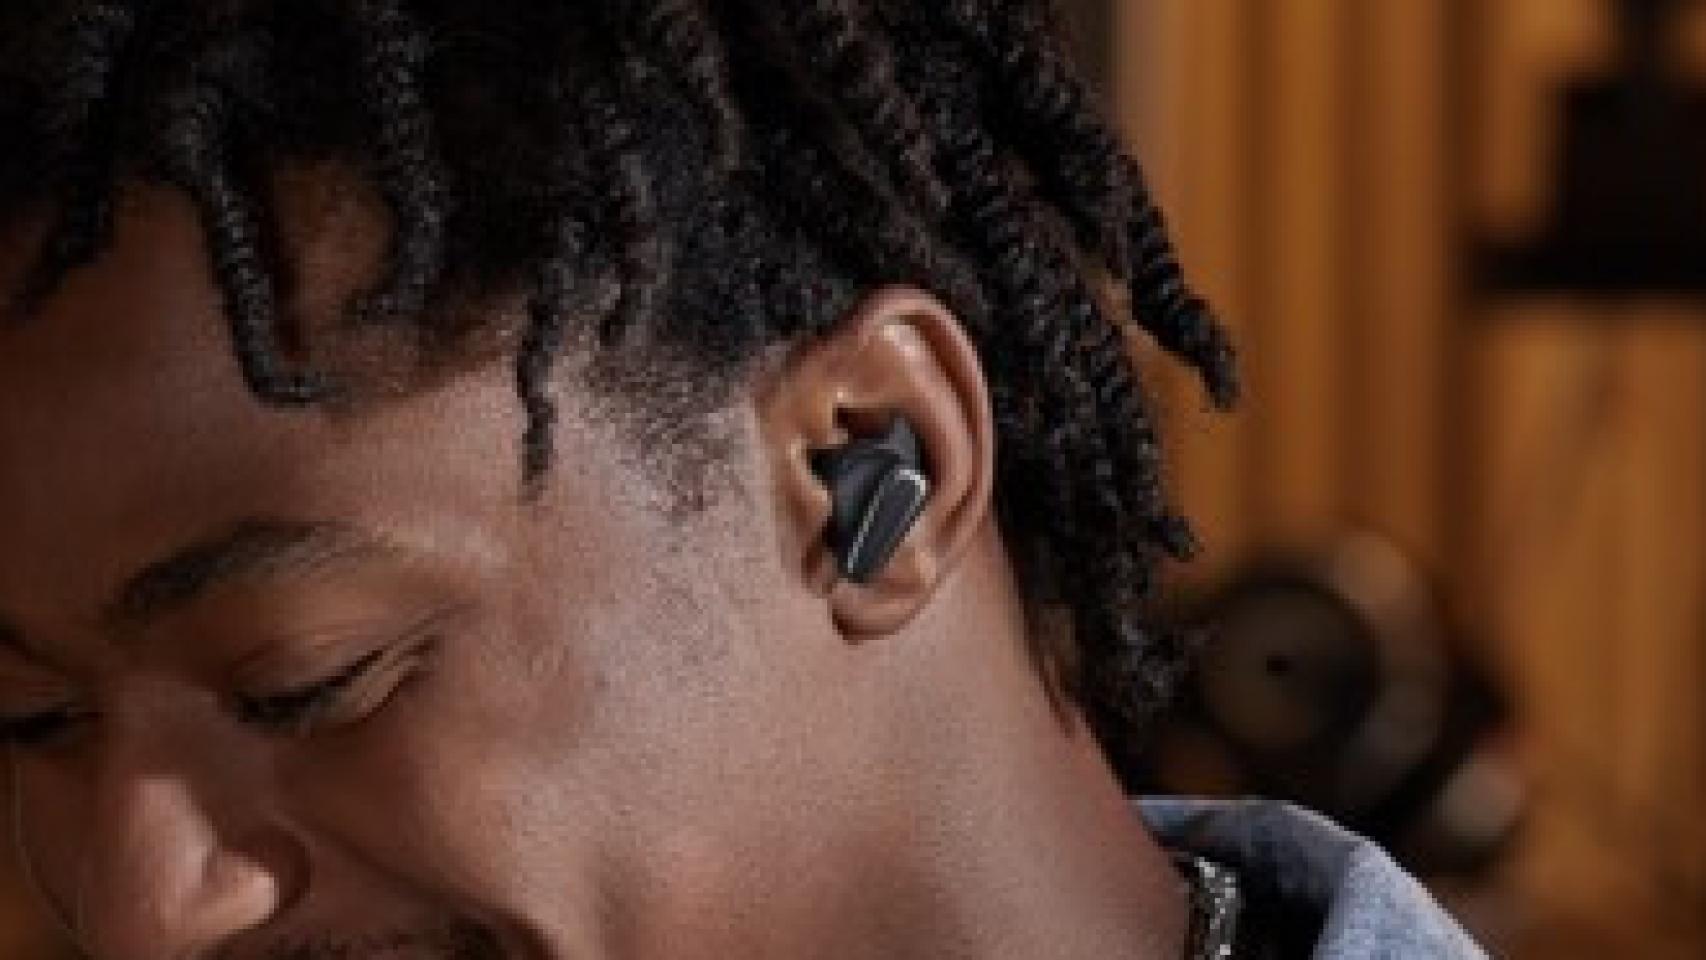 Realme renueva su gama de auriculares con los Buds Air 3s